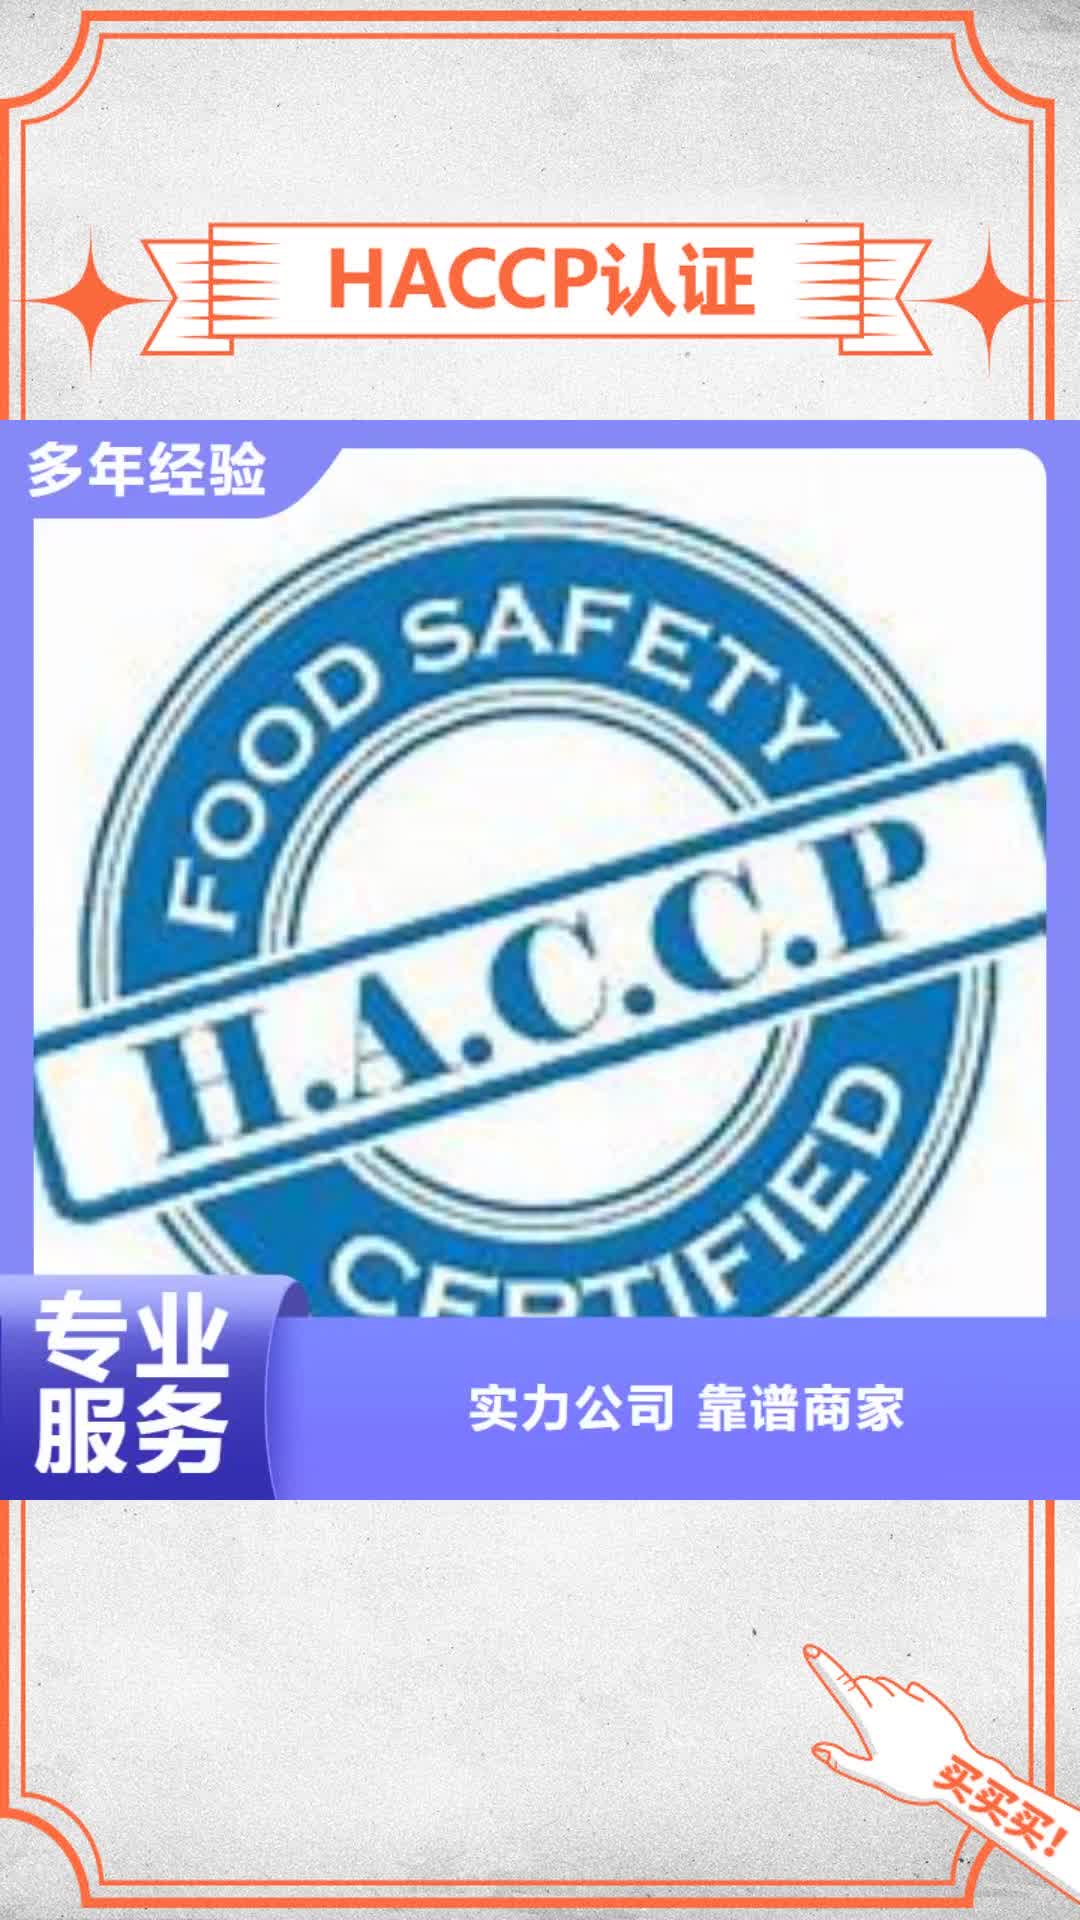 【山西 HACCP认证 ISO9001\ISO9000\ISO14001认证技术可靠】